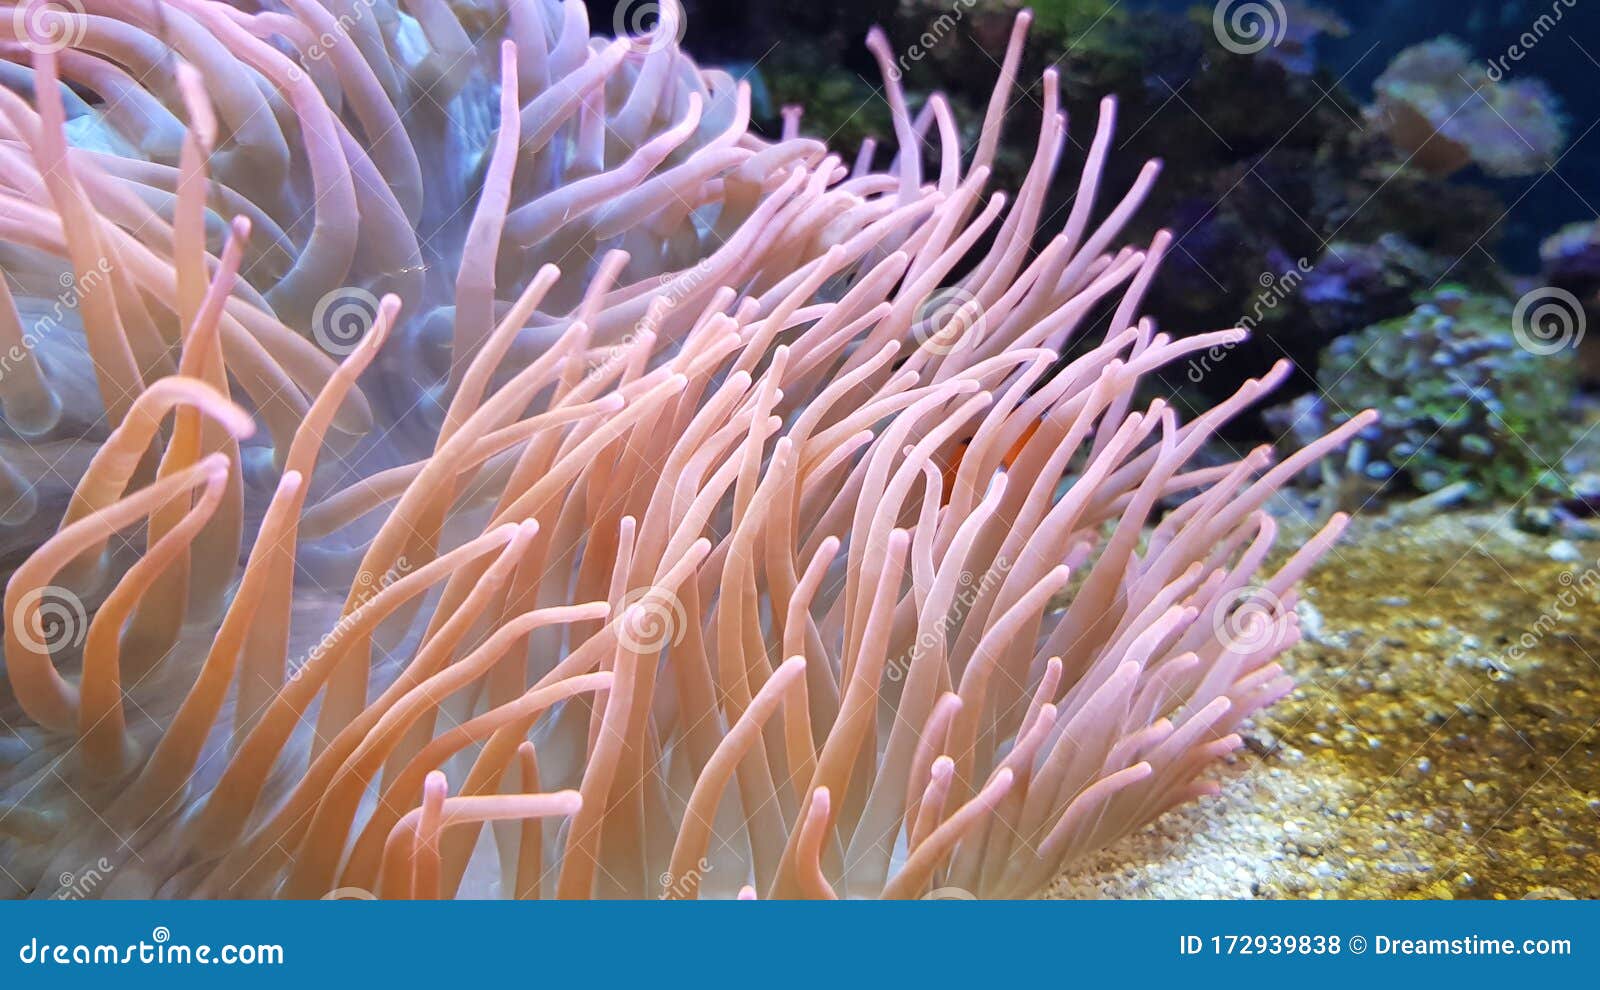 海葵漂浮于水中 大叶尖锐湿疣库存照片 图片包括有珊瑚 菲律宾 生活 逗人喜爱 和平